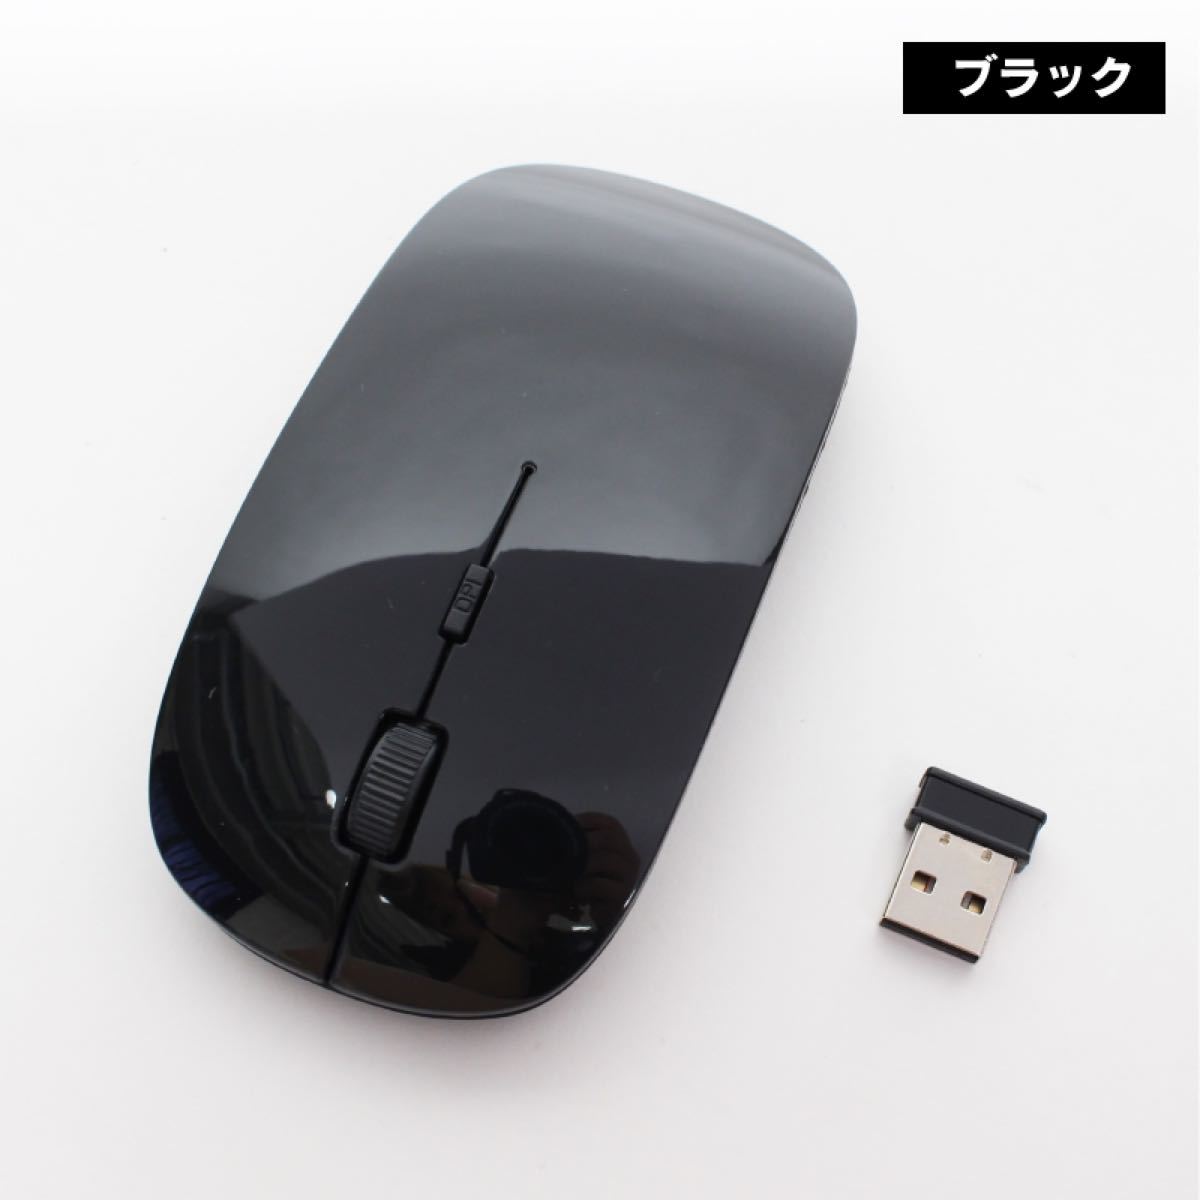 ヒロコーポレーション マウス ワイヤレス 無線 WMNGS-01 ブラック